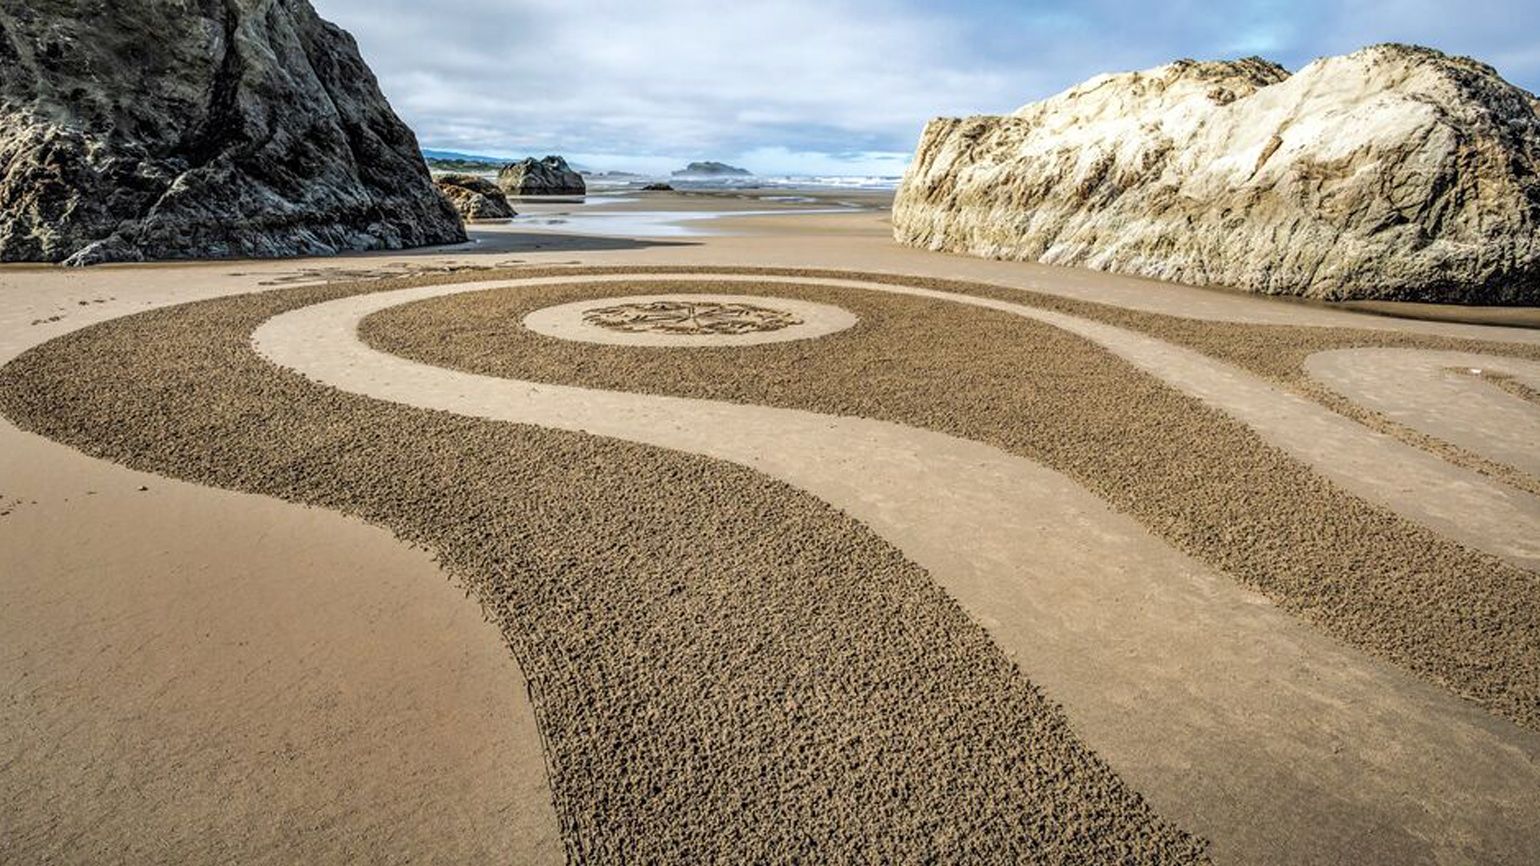 A dreamfield on an Oregon beach crafted by Denny Dyke.